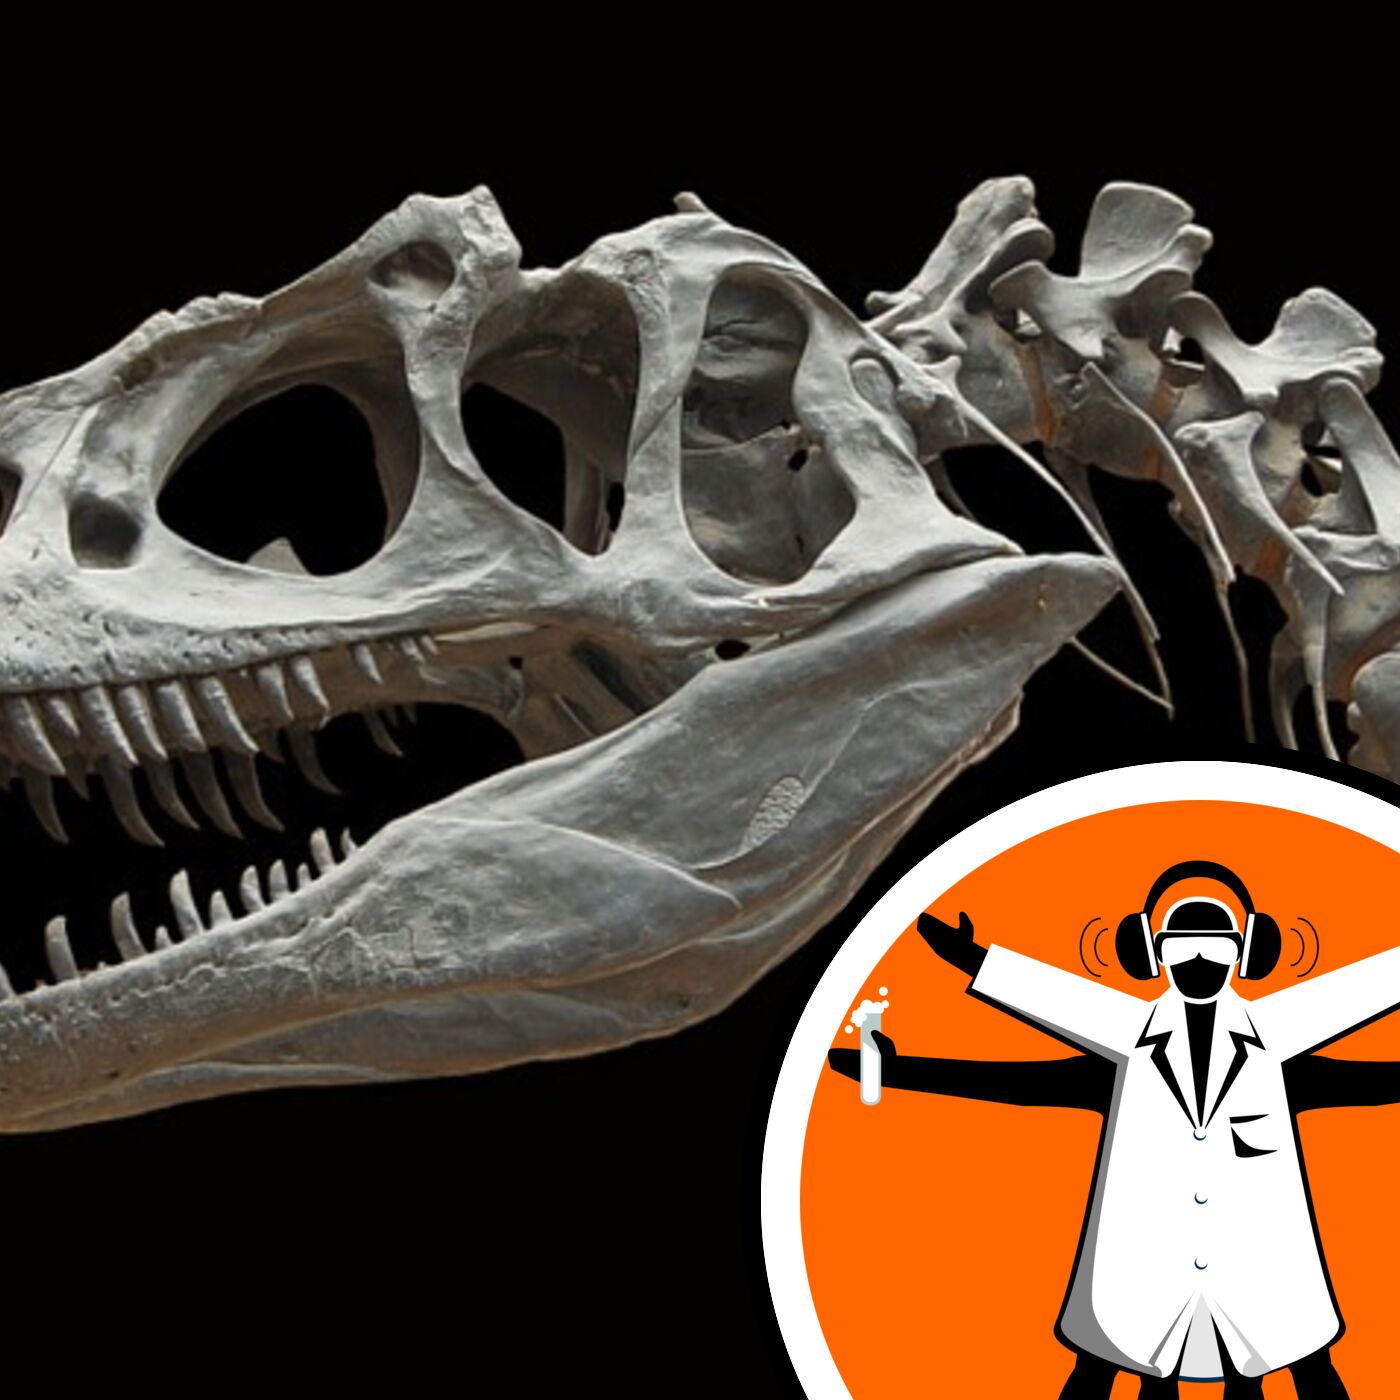 T-rex teens fill mid-size predator gap